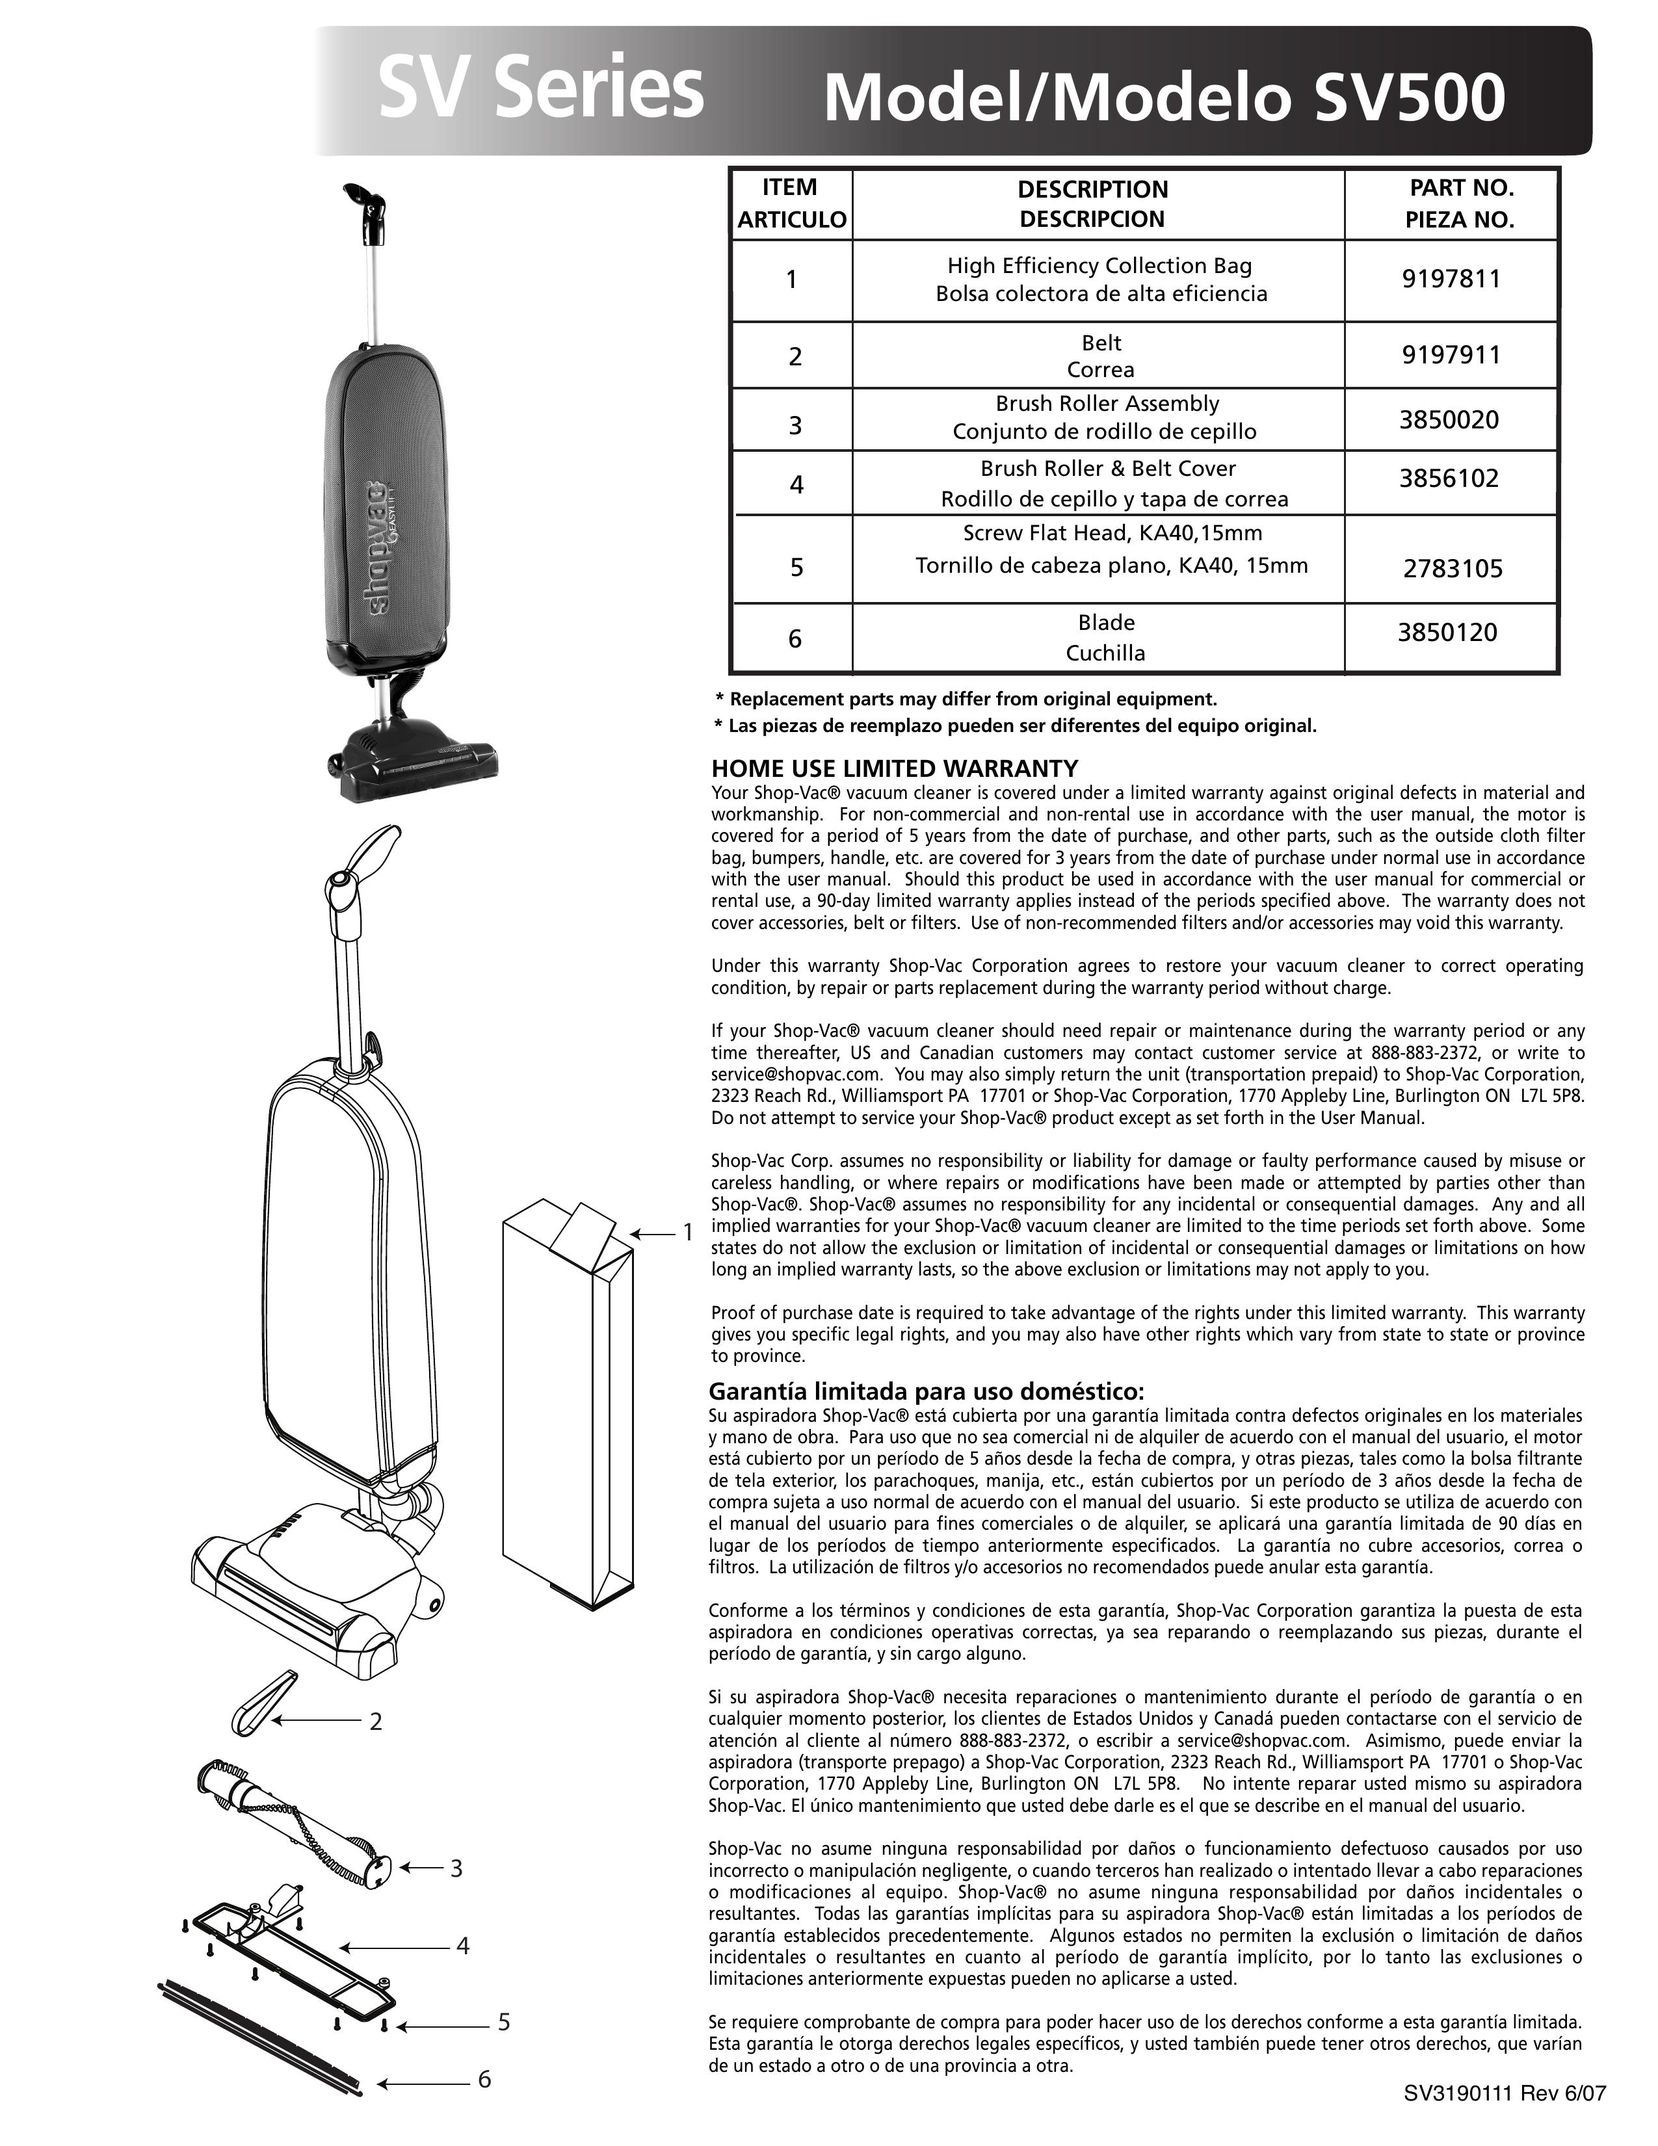 Shop-Vac SV500 Vacuum Cleaner User Manual